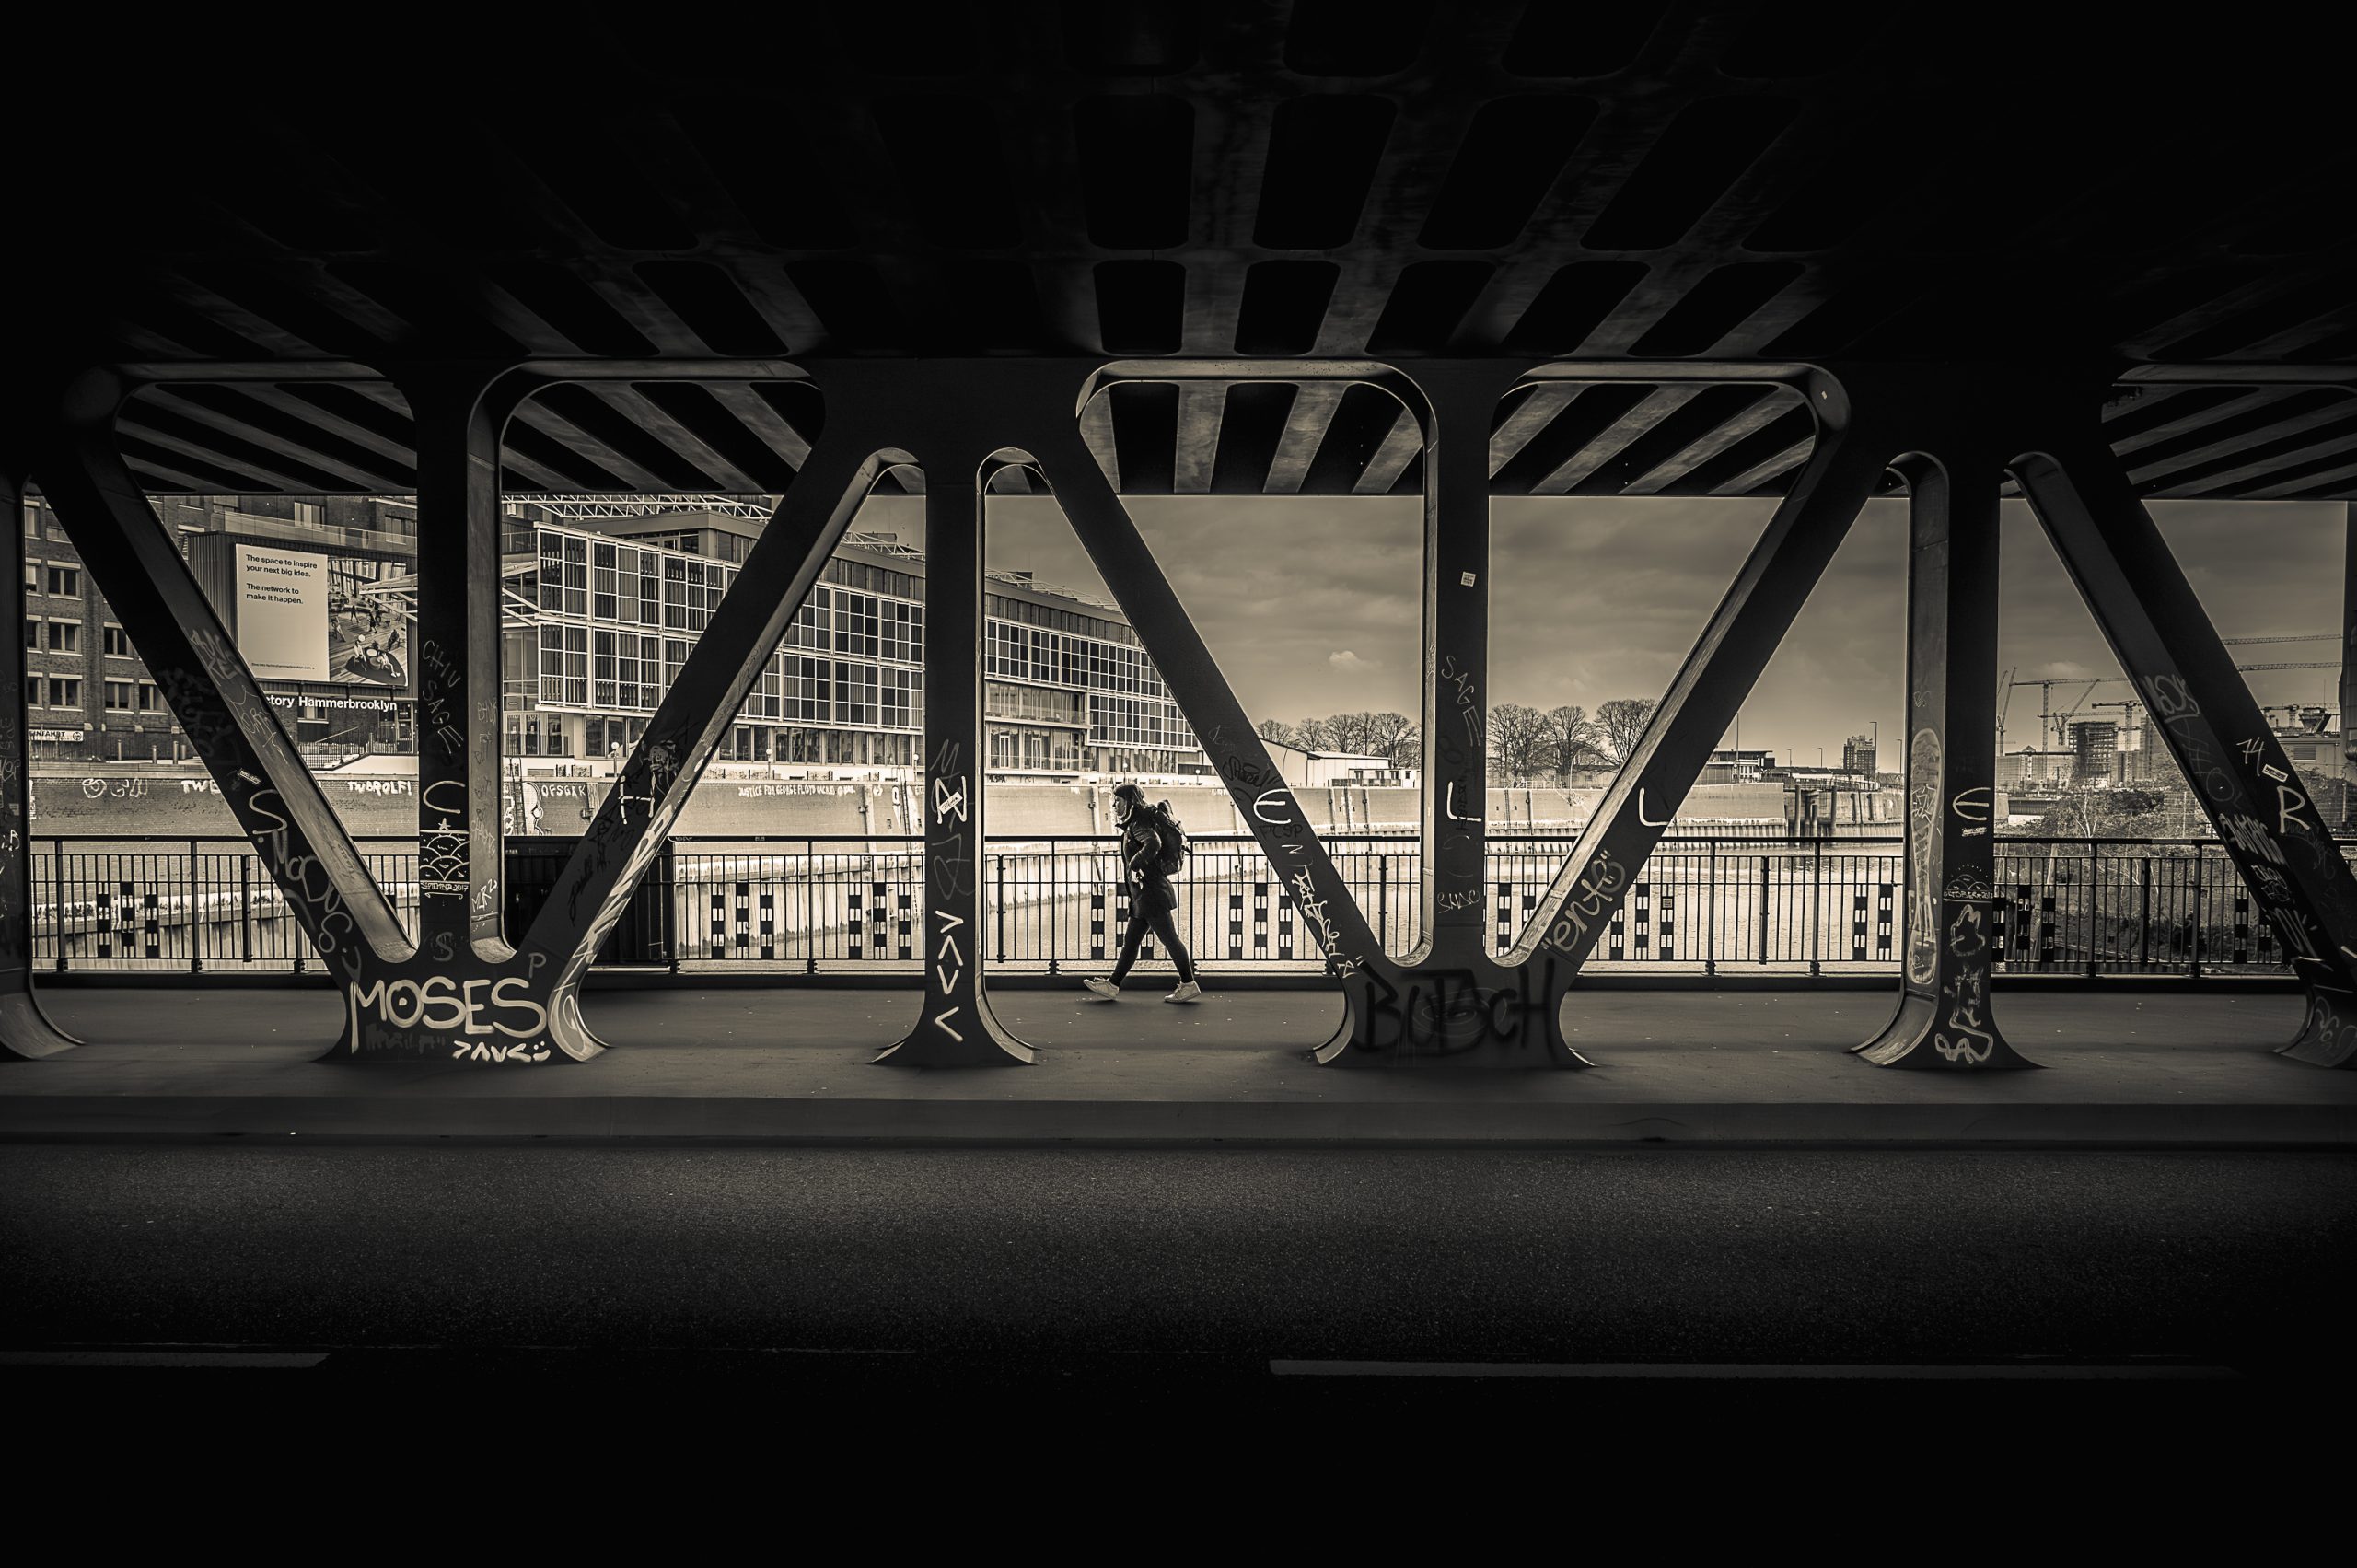 Die Oberhafenbrücke in Hamburg in schwarzweiß